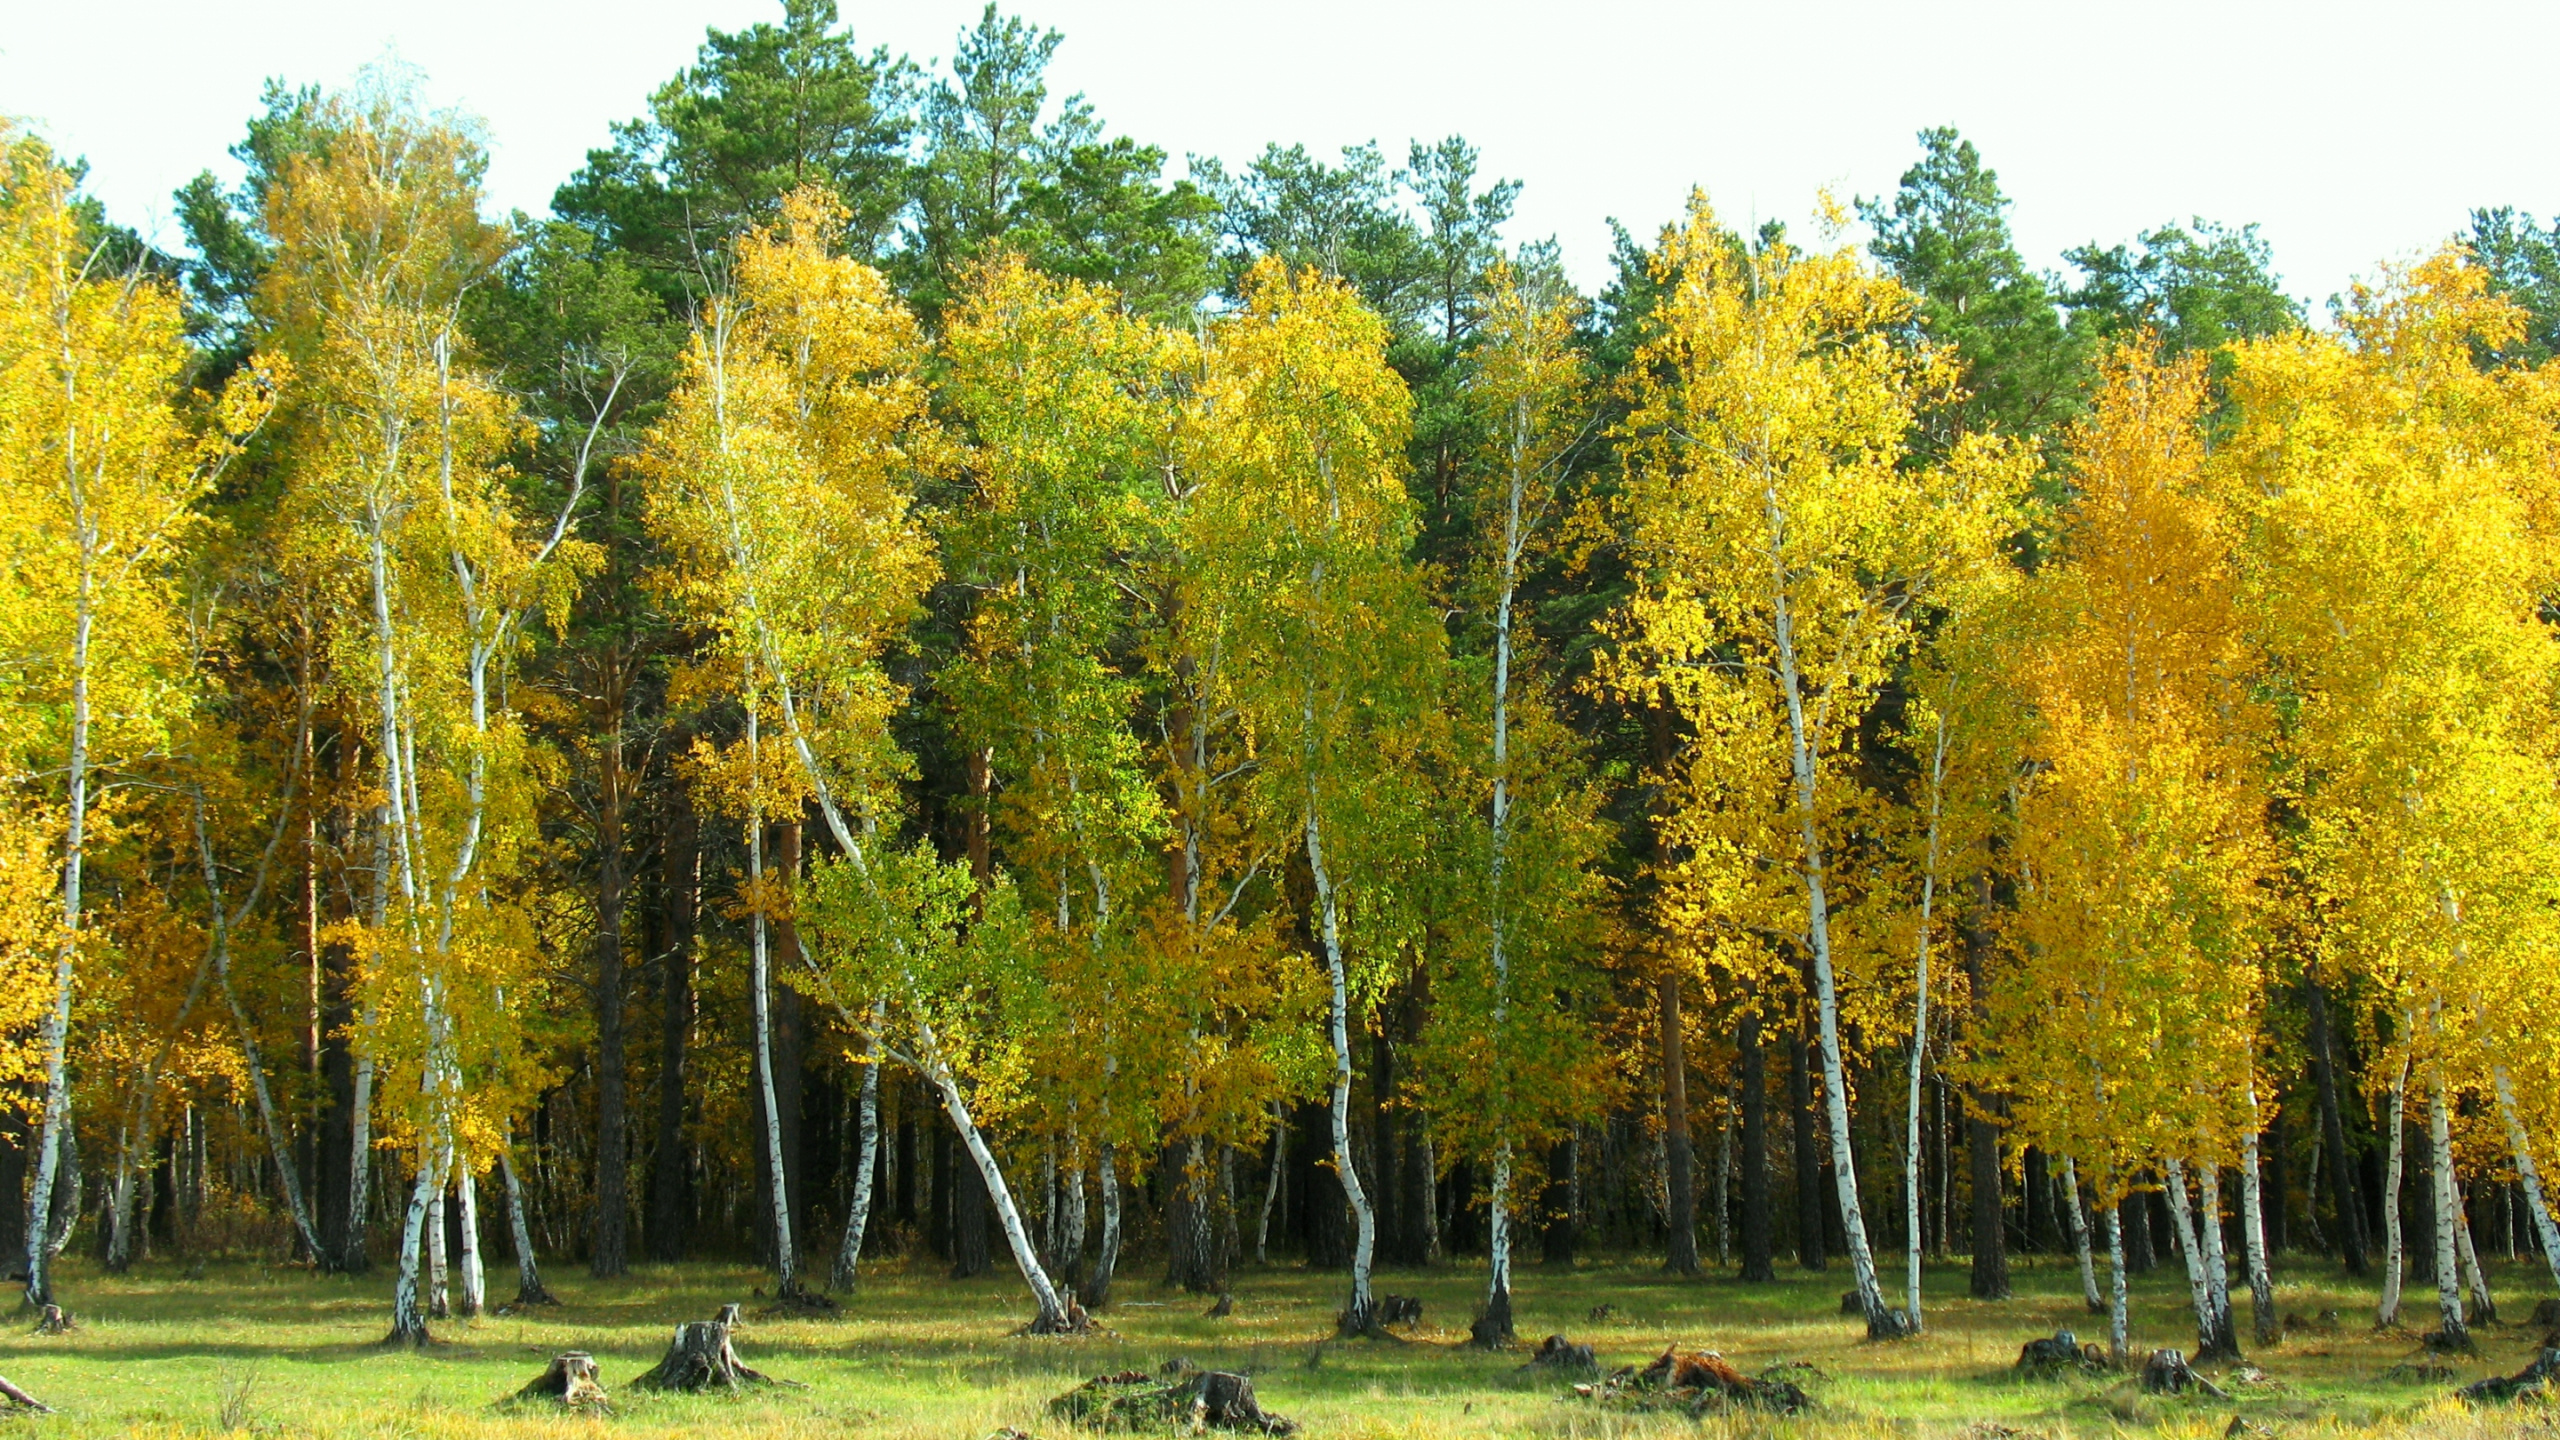 Birch, 森林, 生物群落, 落叶, 生态系统 壁纸 2560x1440 允许